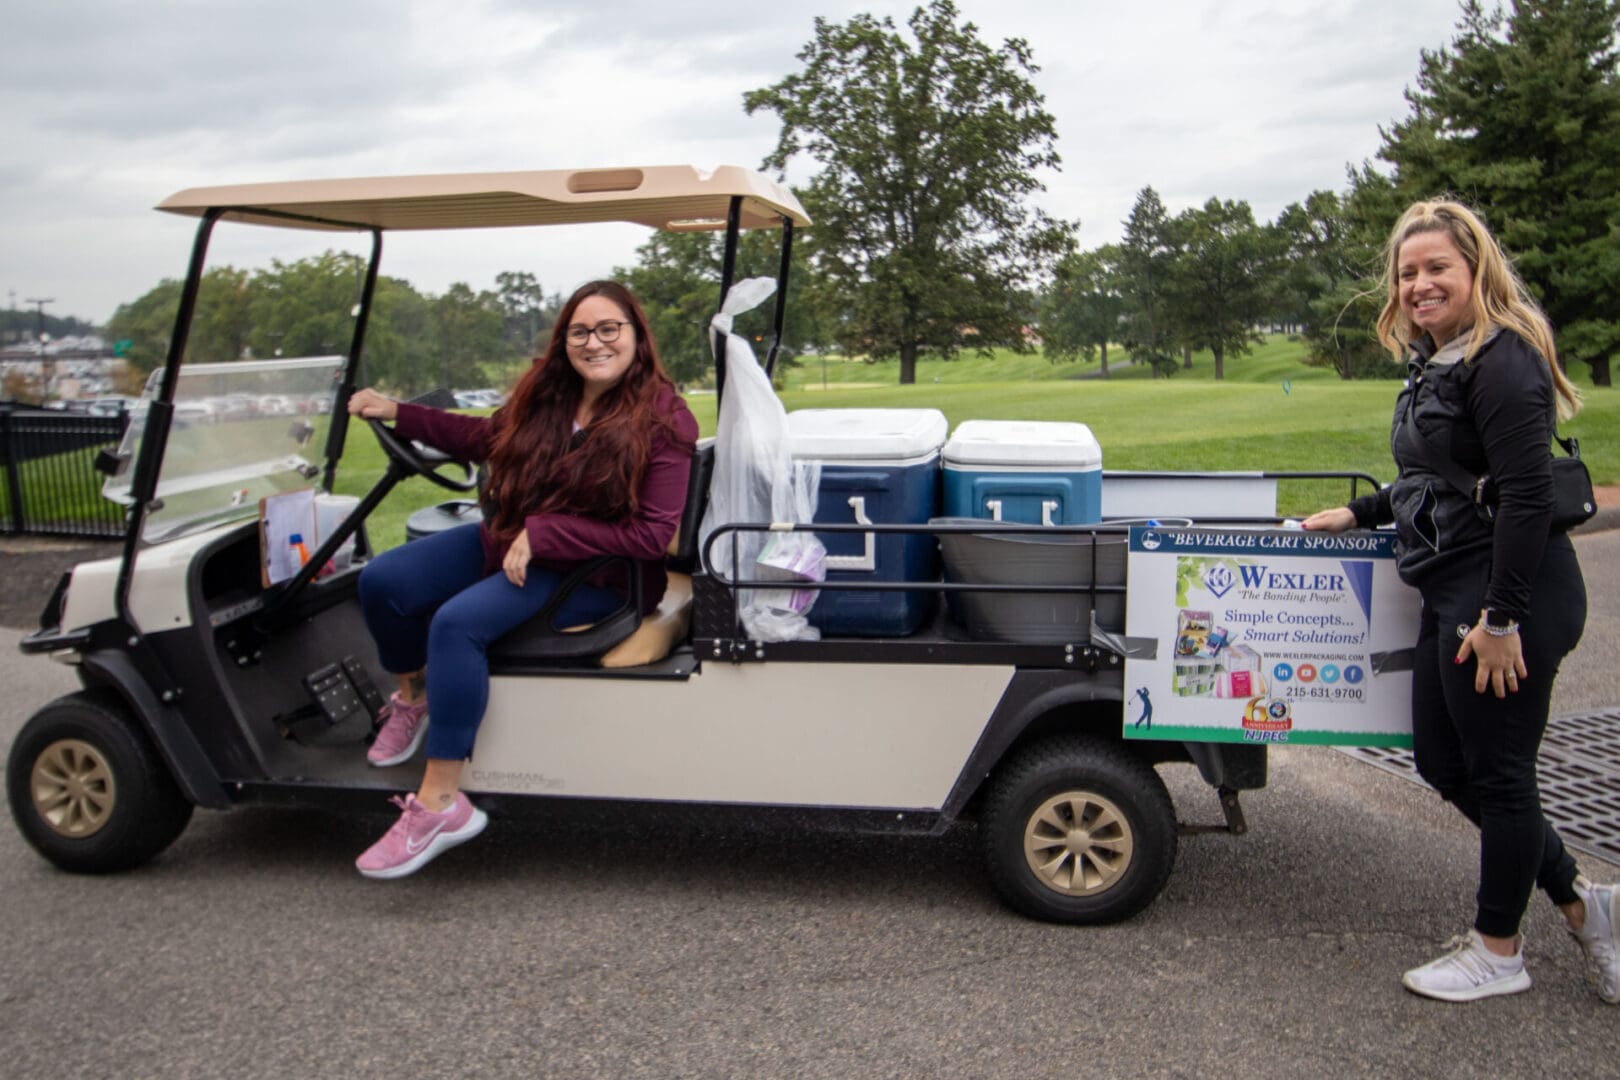 2 women next to a golf cart